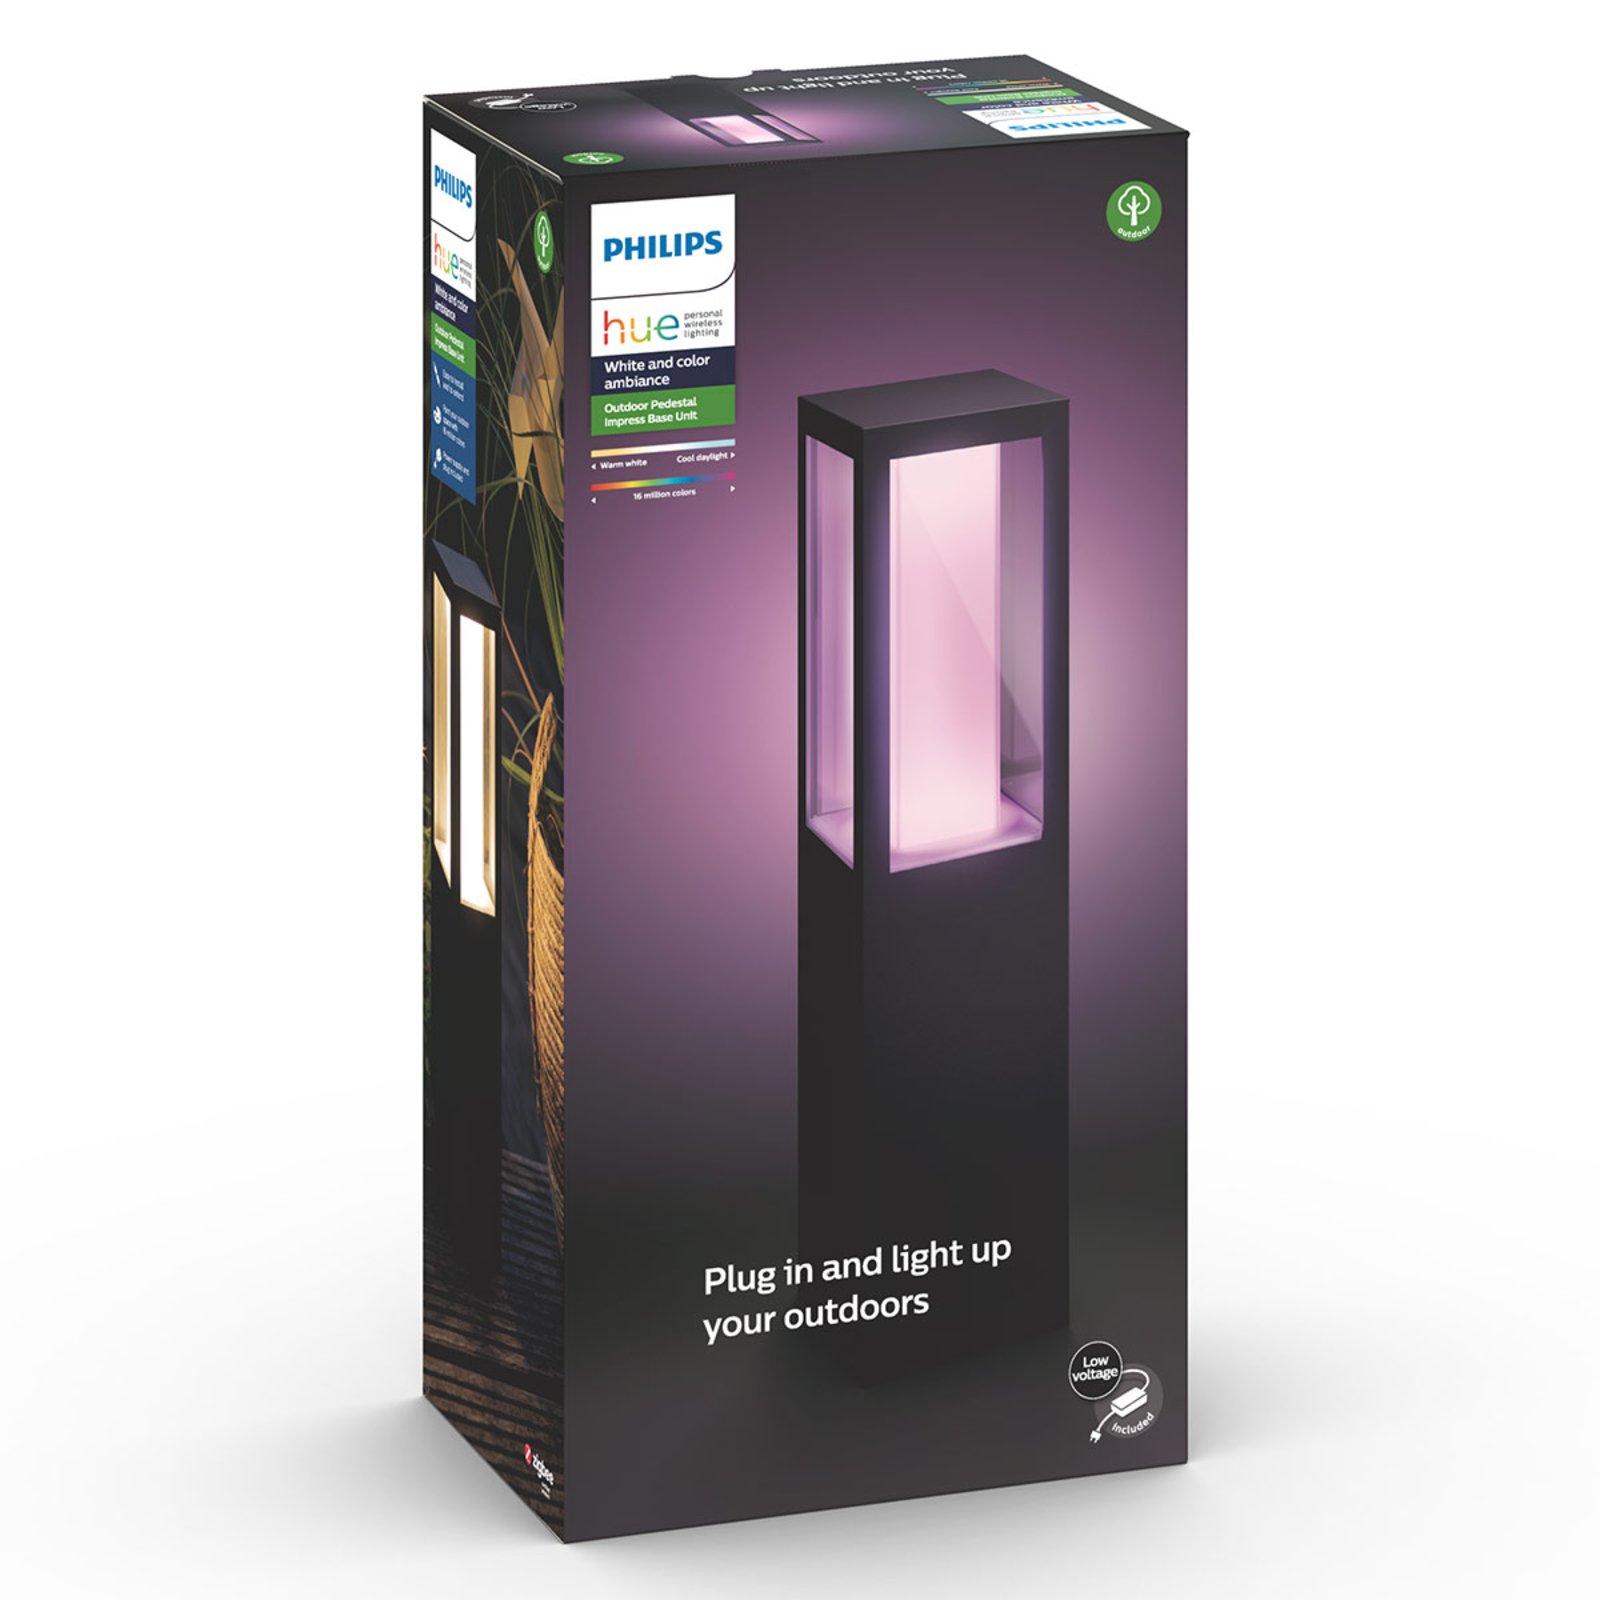 Philips Hue Impress luminaire pour socle, kit de base